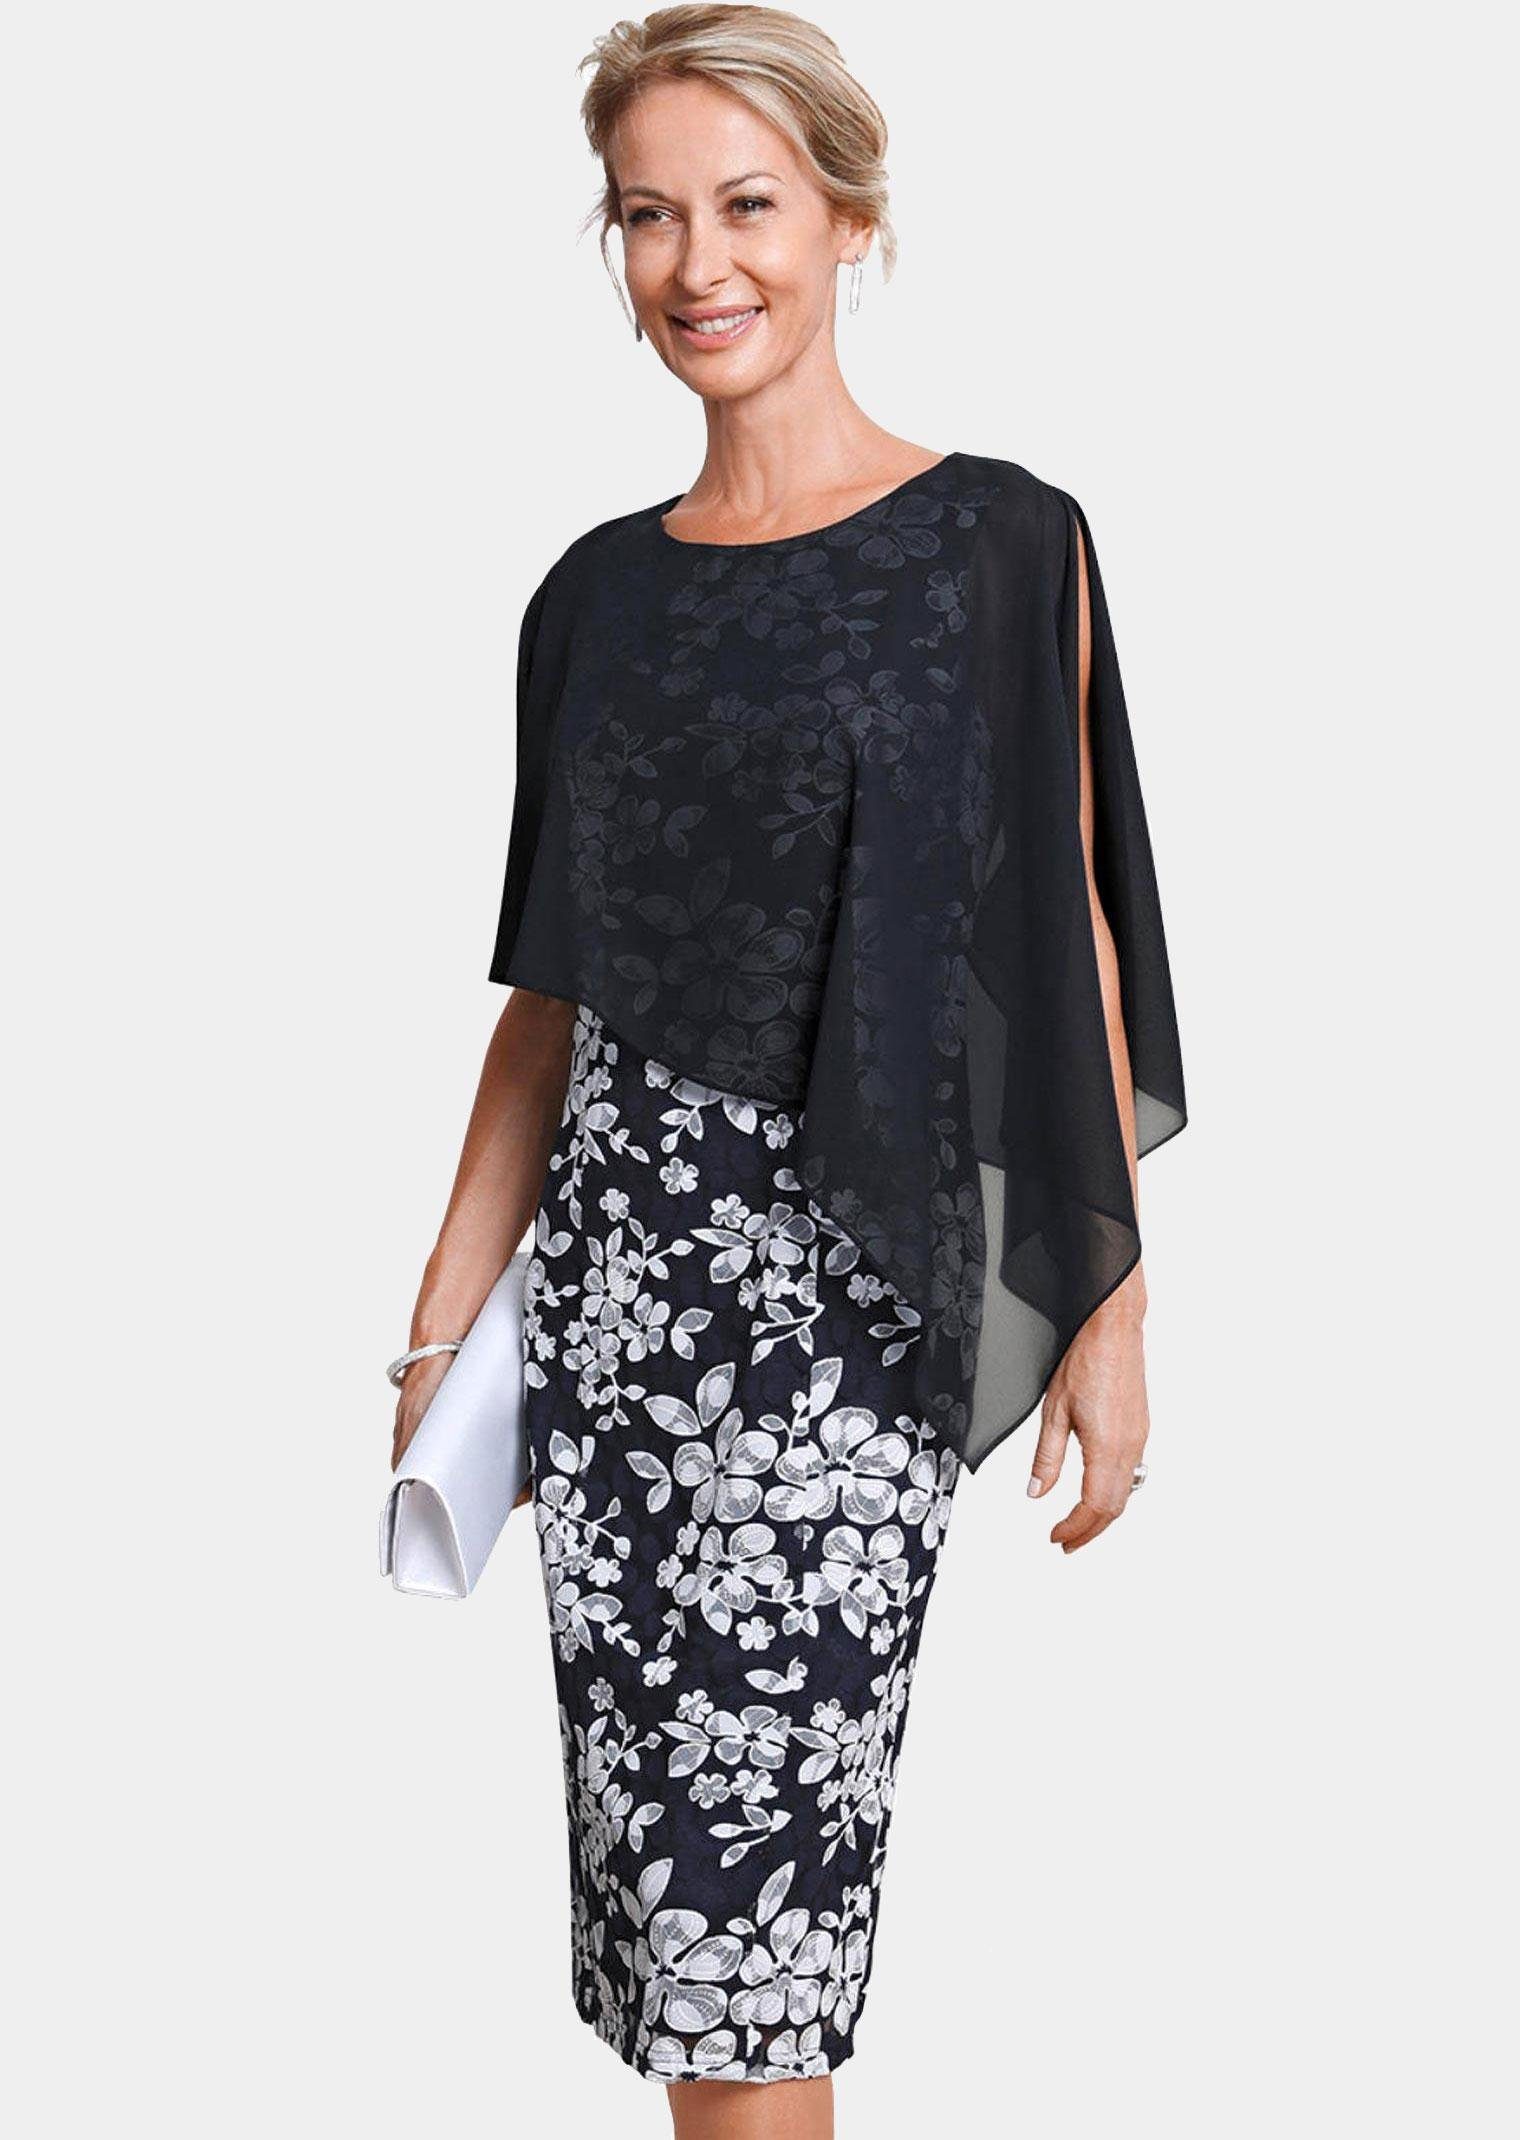 GOLDNER Abendkleid »Kleid aus eleganter Spitze mit Chiffonüberwurf« Ohne  online kaufen | OTTO